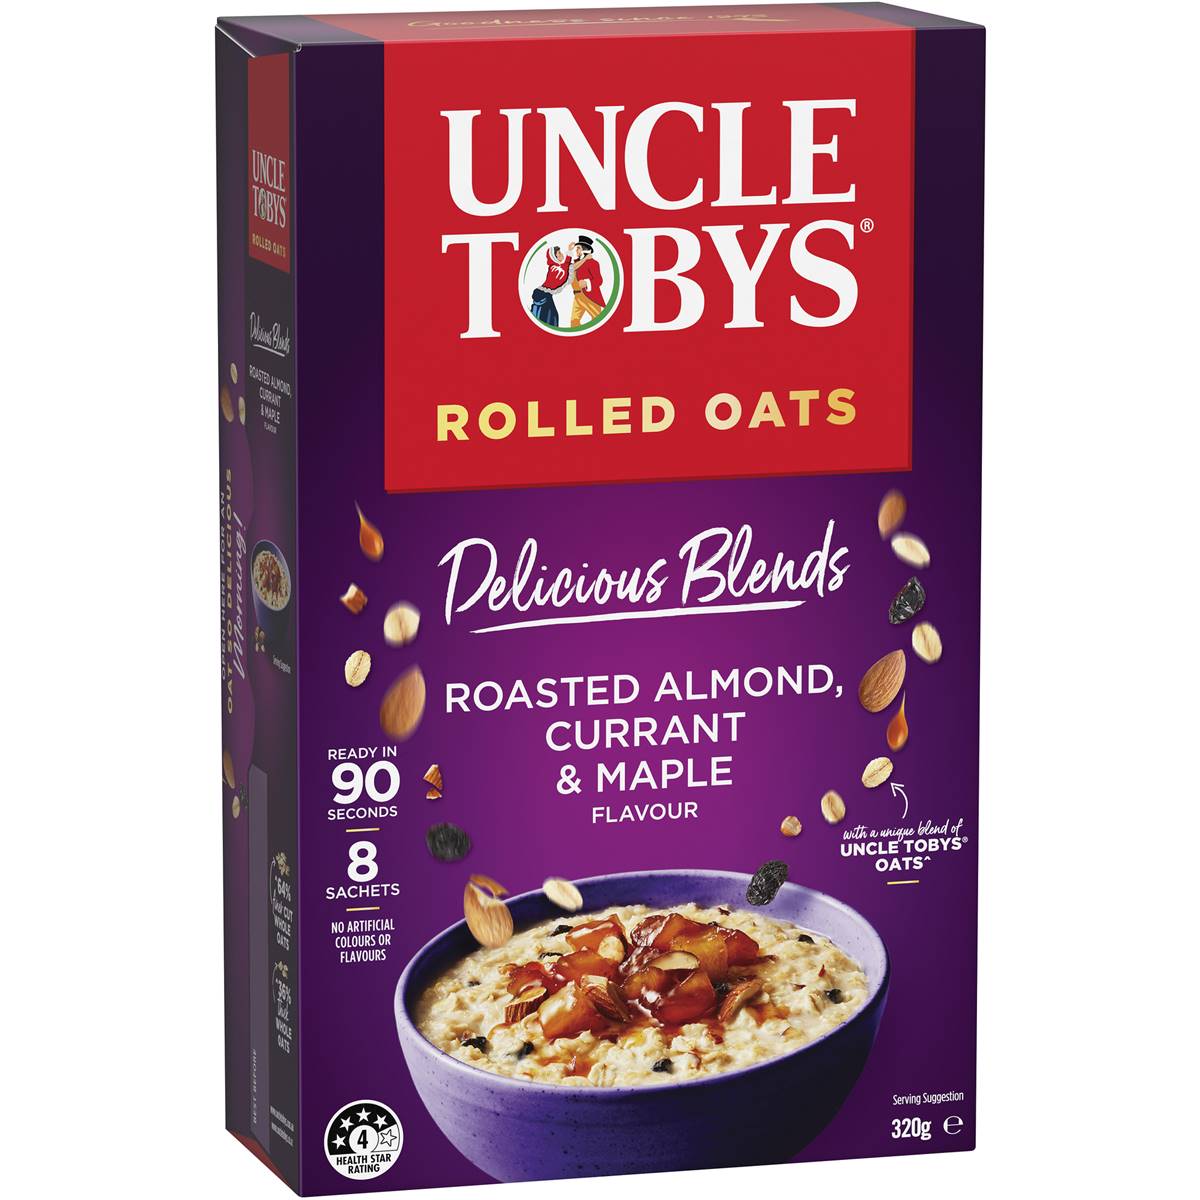 Calories in Uncle Tobys Oats Porridge Delicious Blends Almond, Currant & Maple